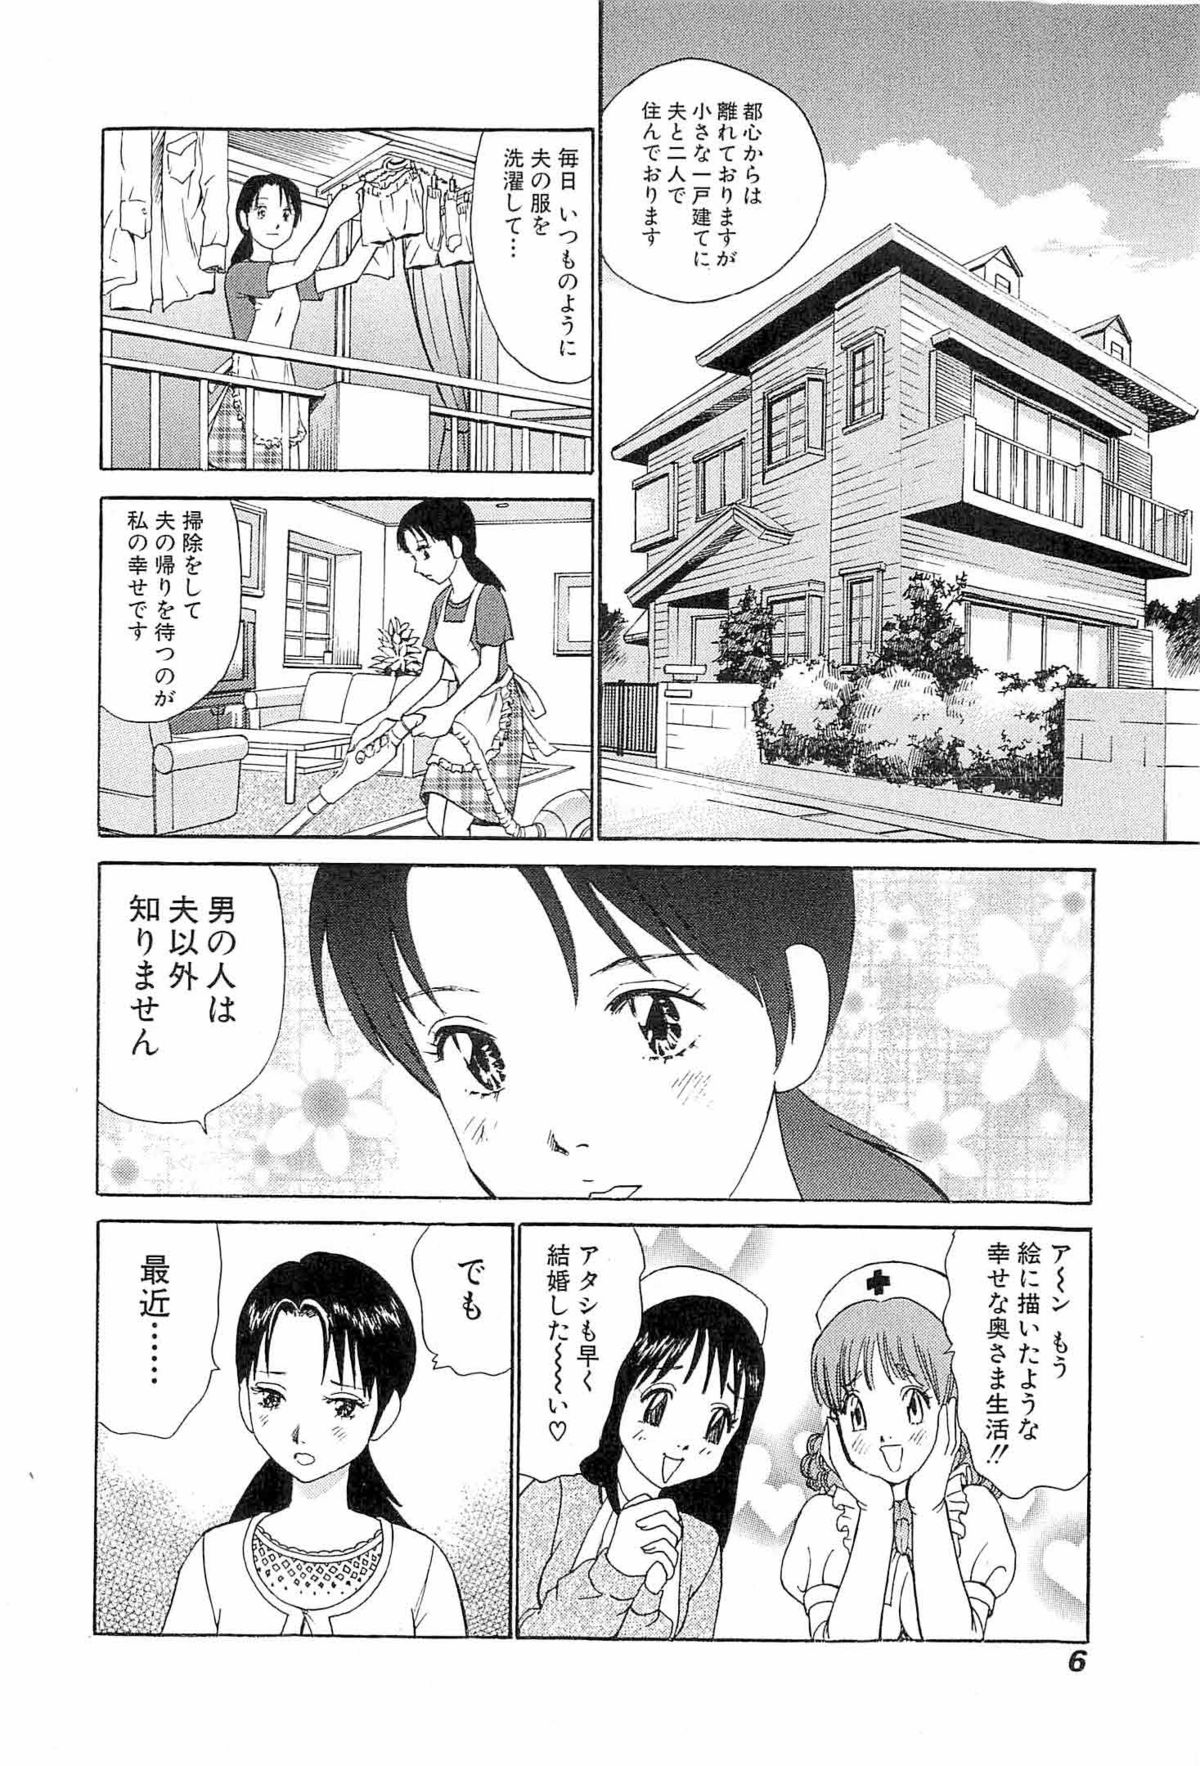 [Miyasu Nonki] Welcome To Momoka Clinic 04 (Final Volume) 